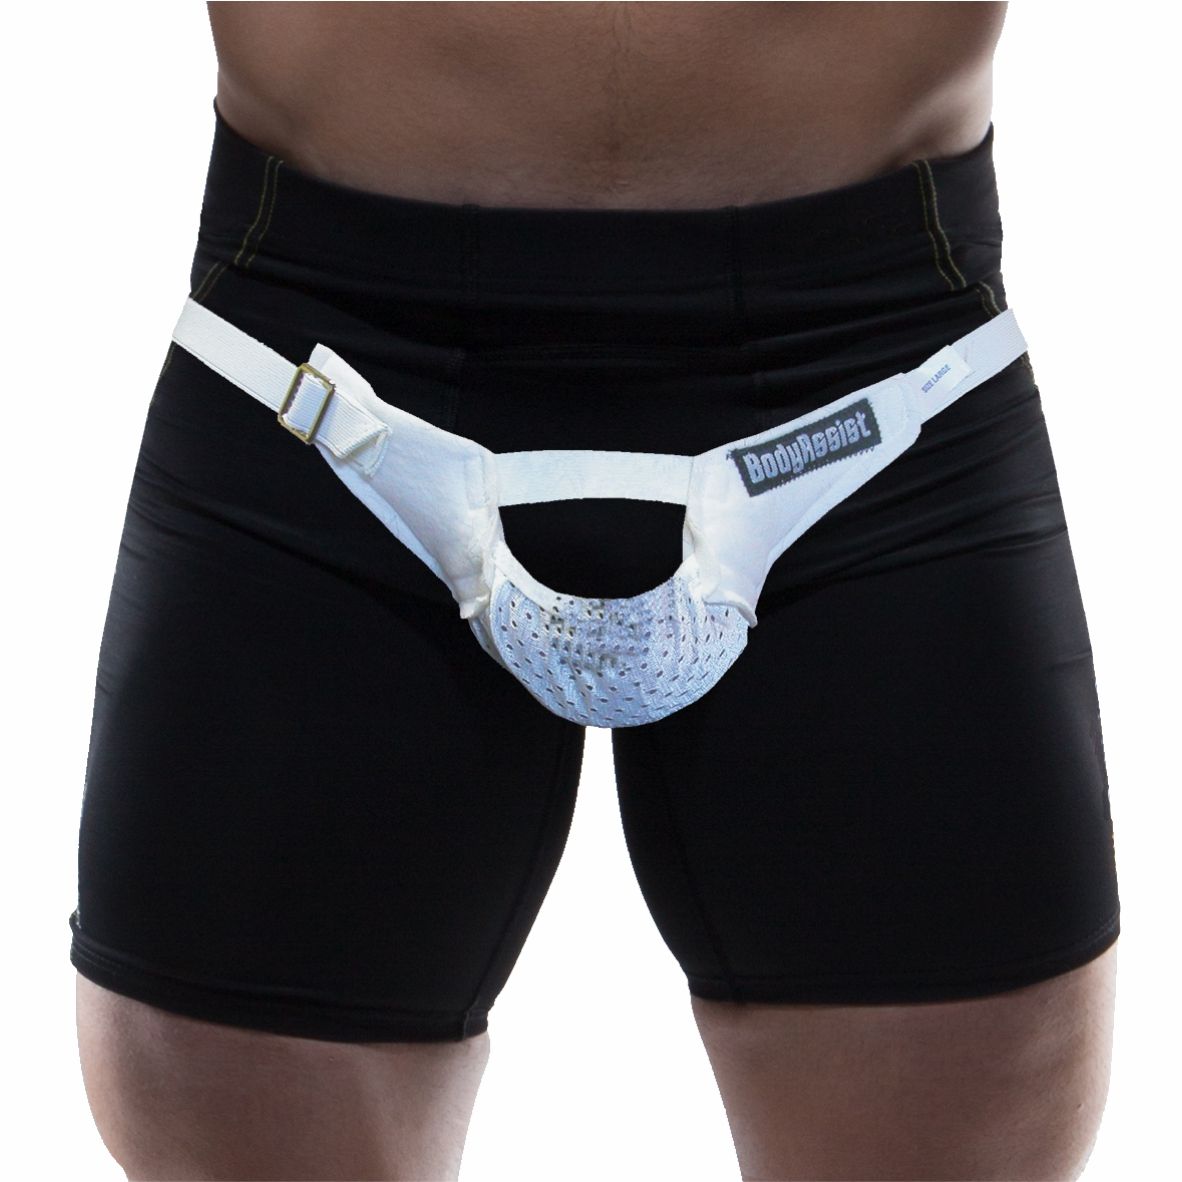 https://www.bodyheal.com.au/cdn/shop/files/body-assist-testicular-support-sling-2_1800x1800.jpg?v=1694139079